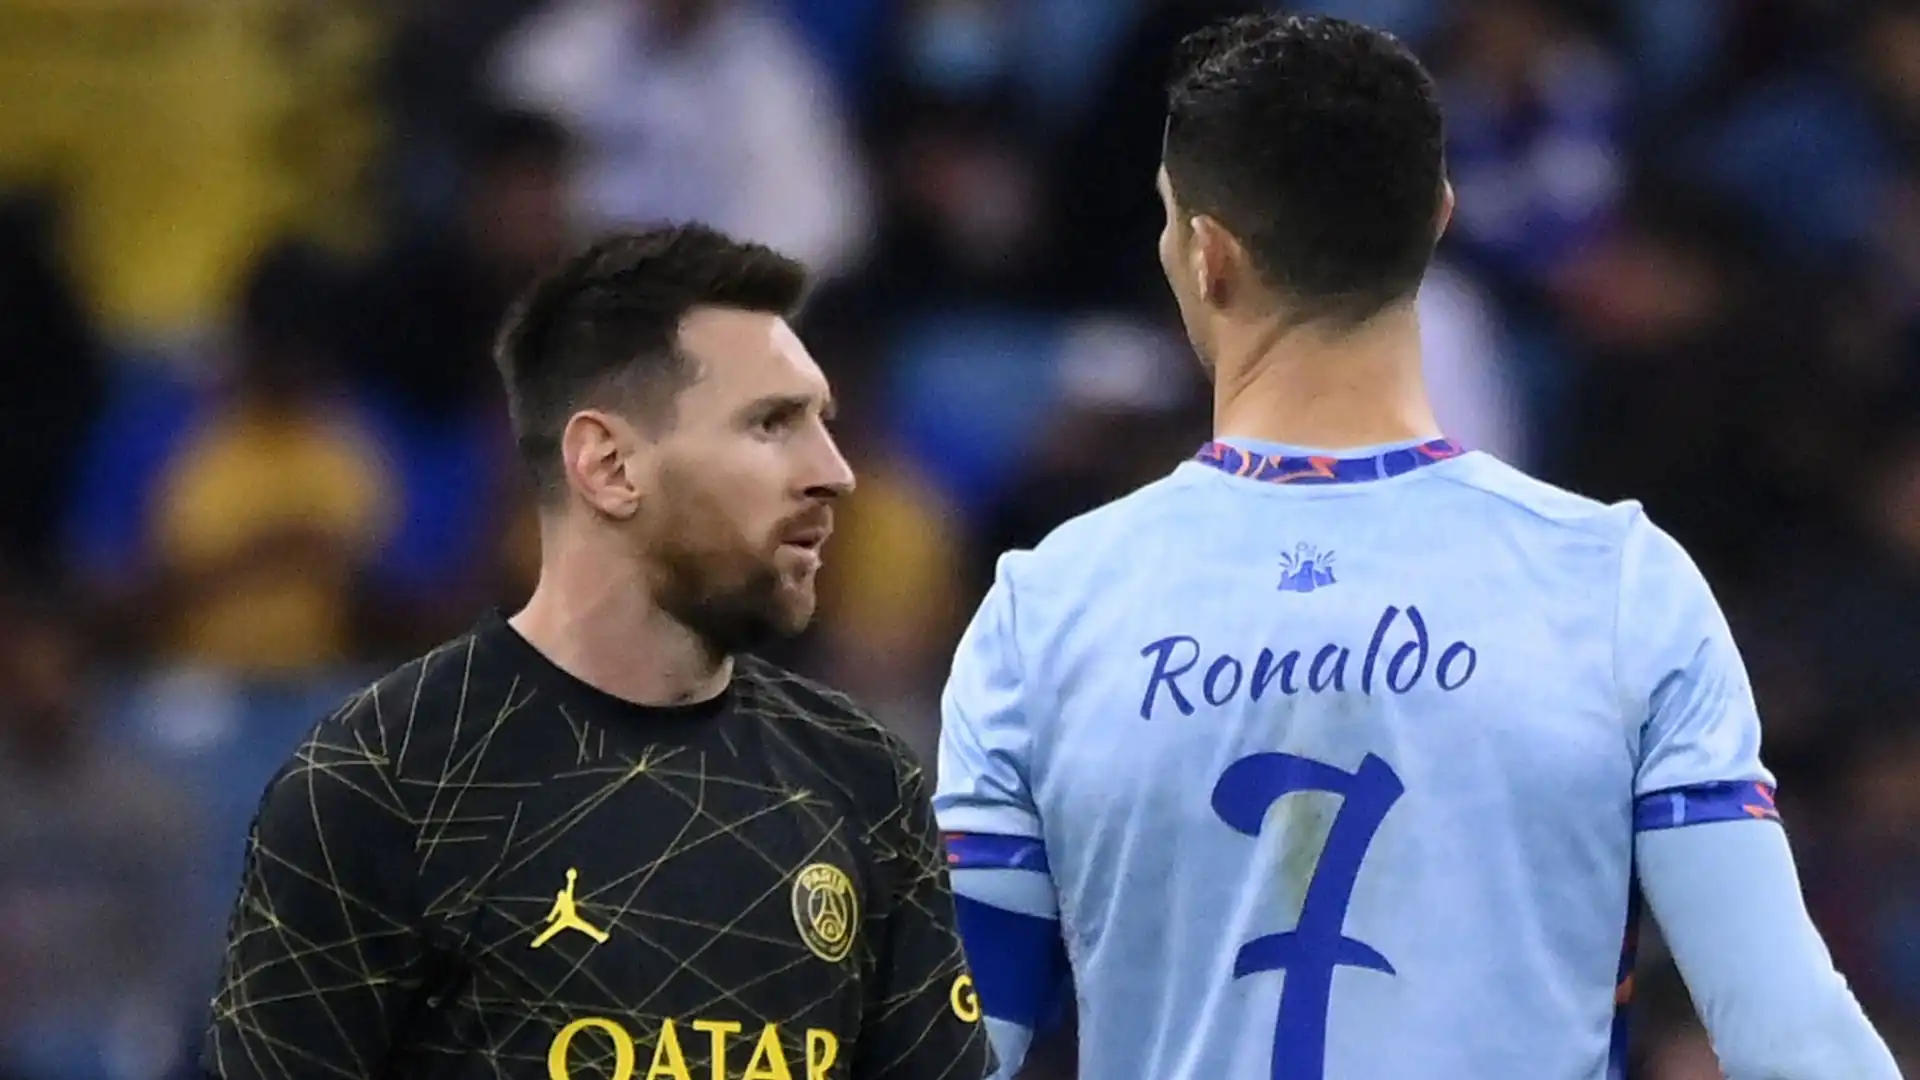 E' saltata la sfida tra Cristiano Ronaldo e Lionel Messi